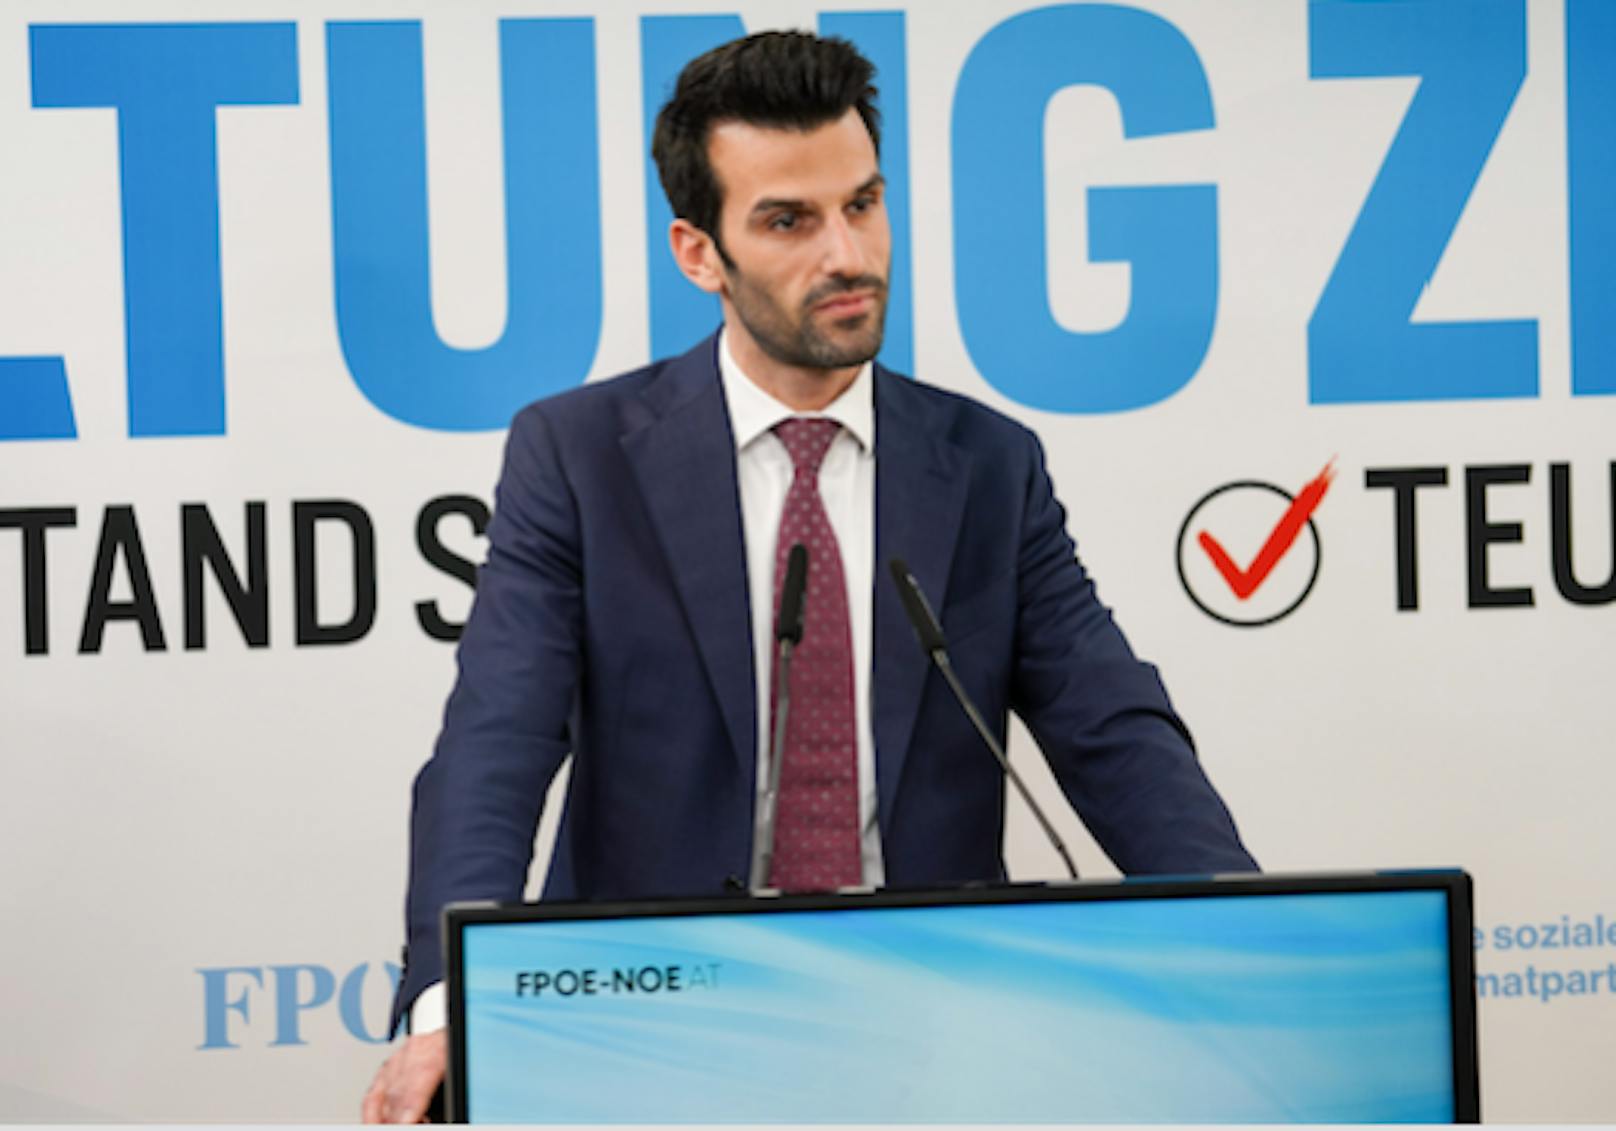 Udo Landbauers FPNÖ wird keine Stimme abgeben.